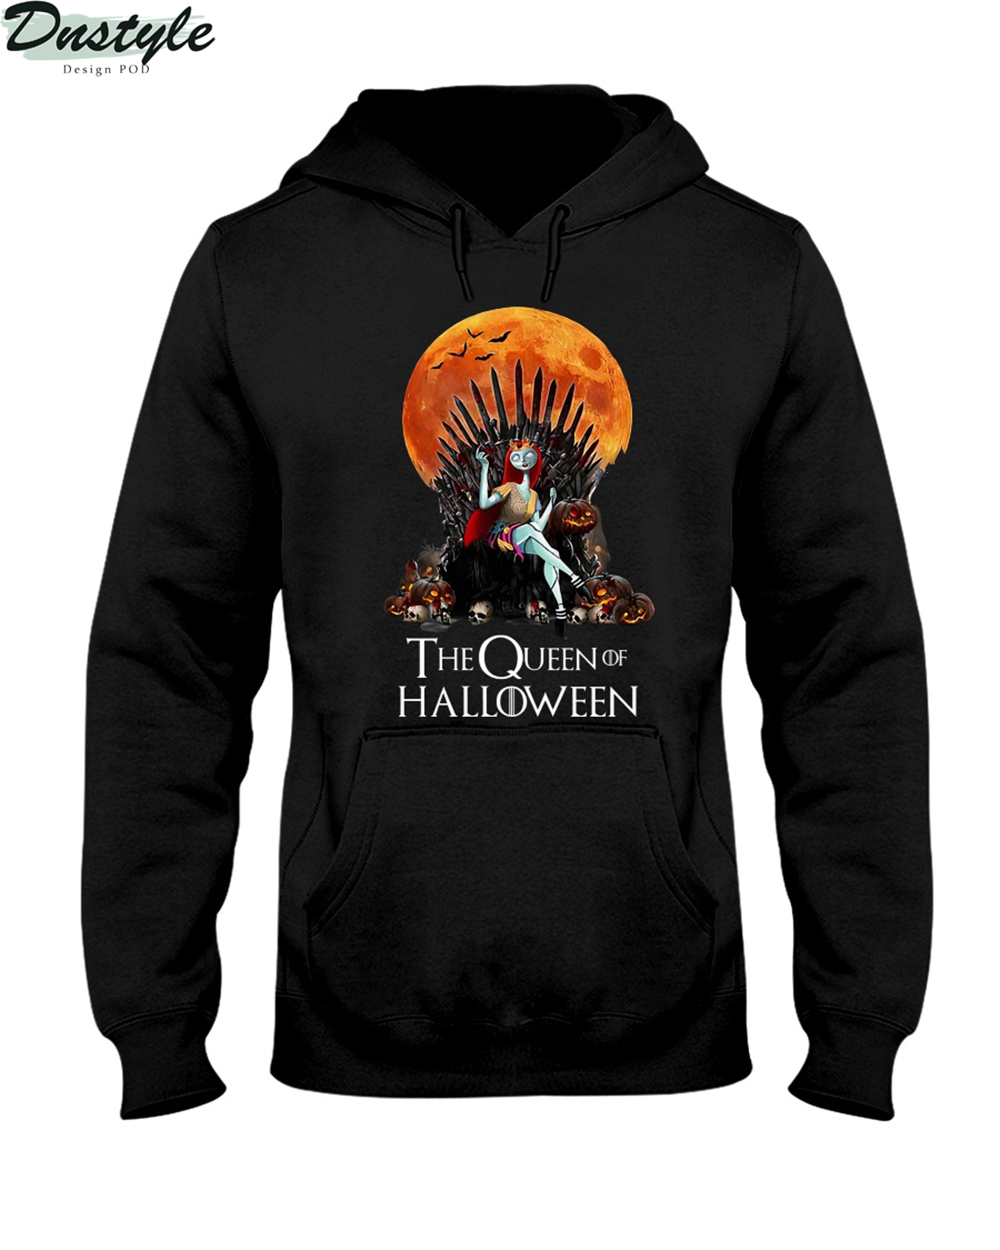 Sally the queen of halloween hoodie